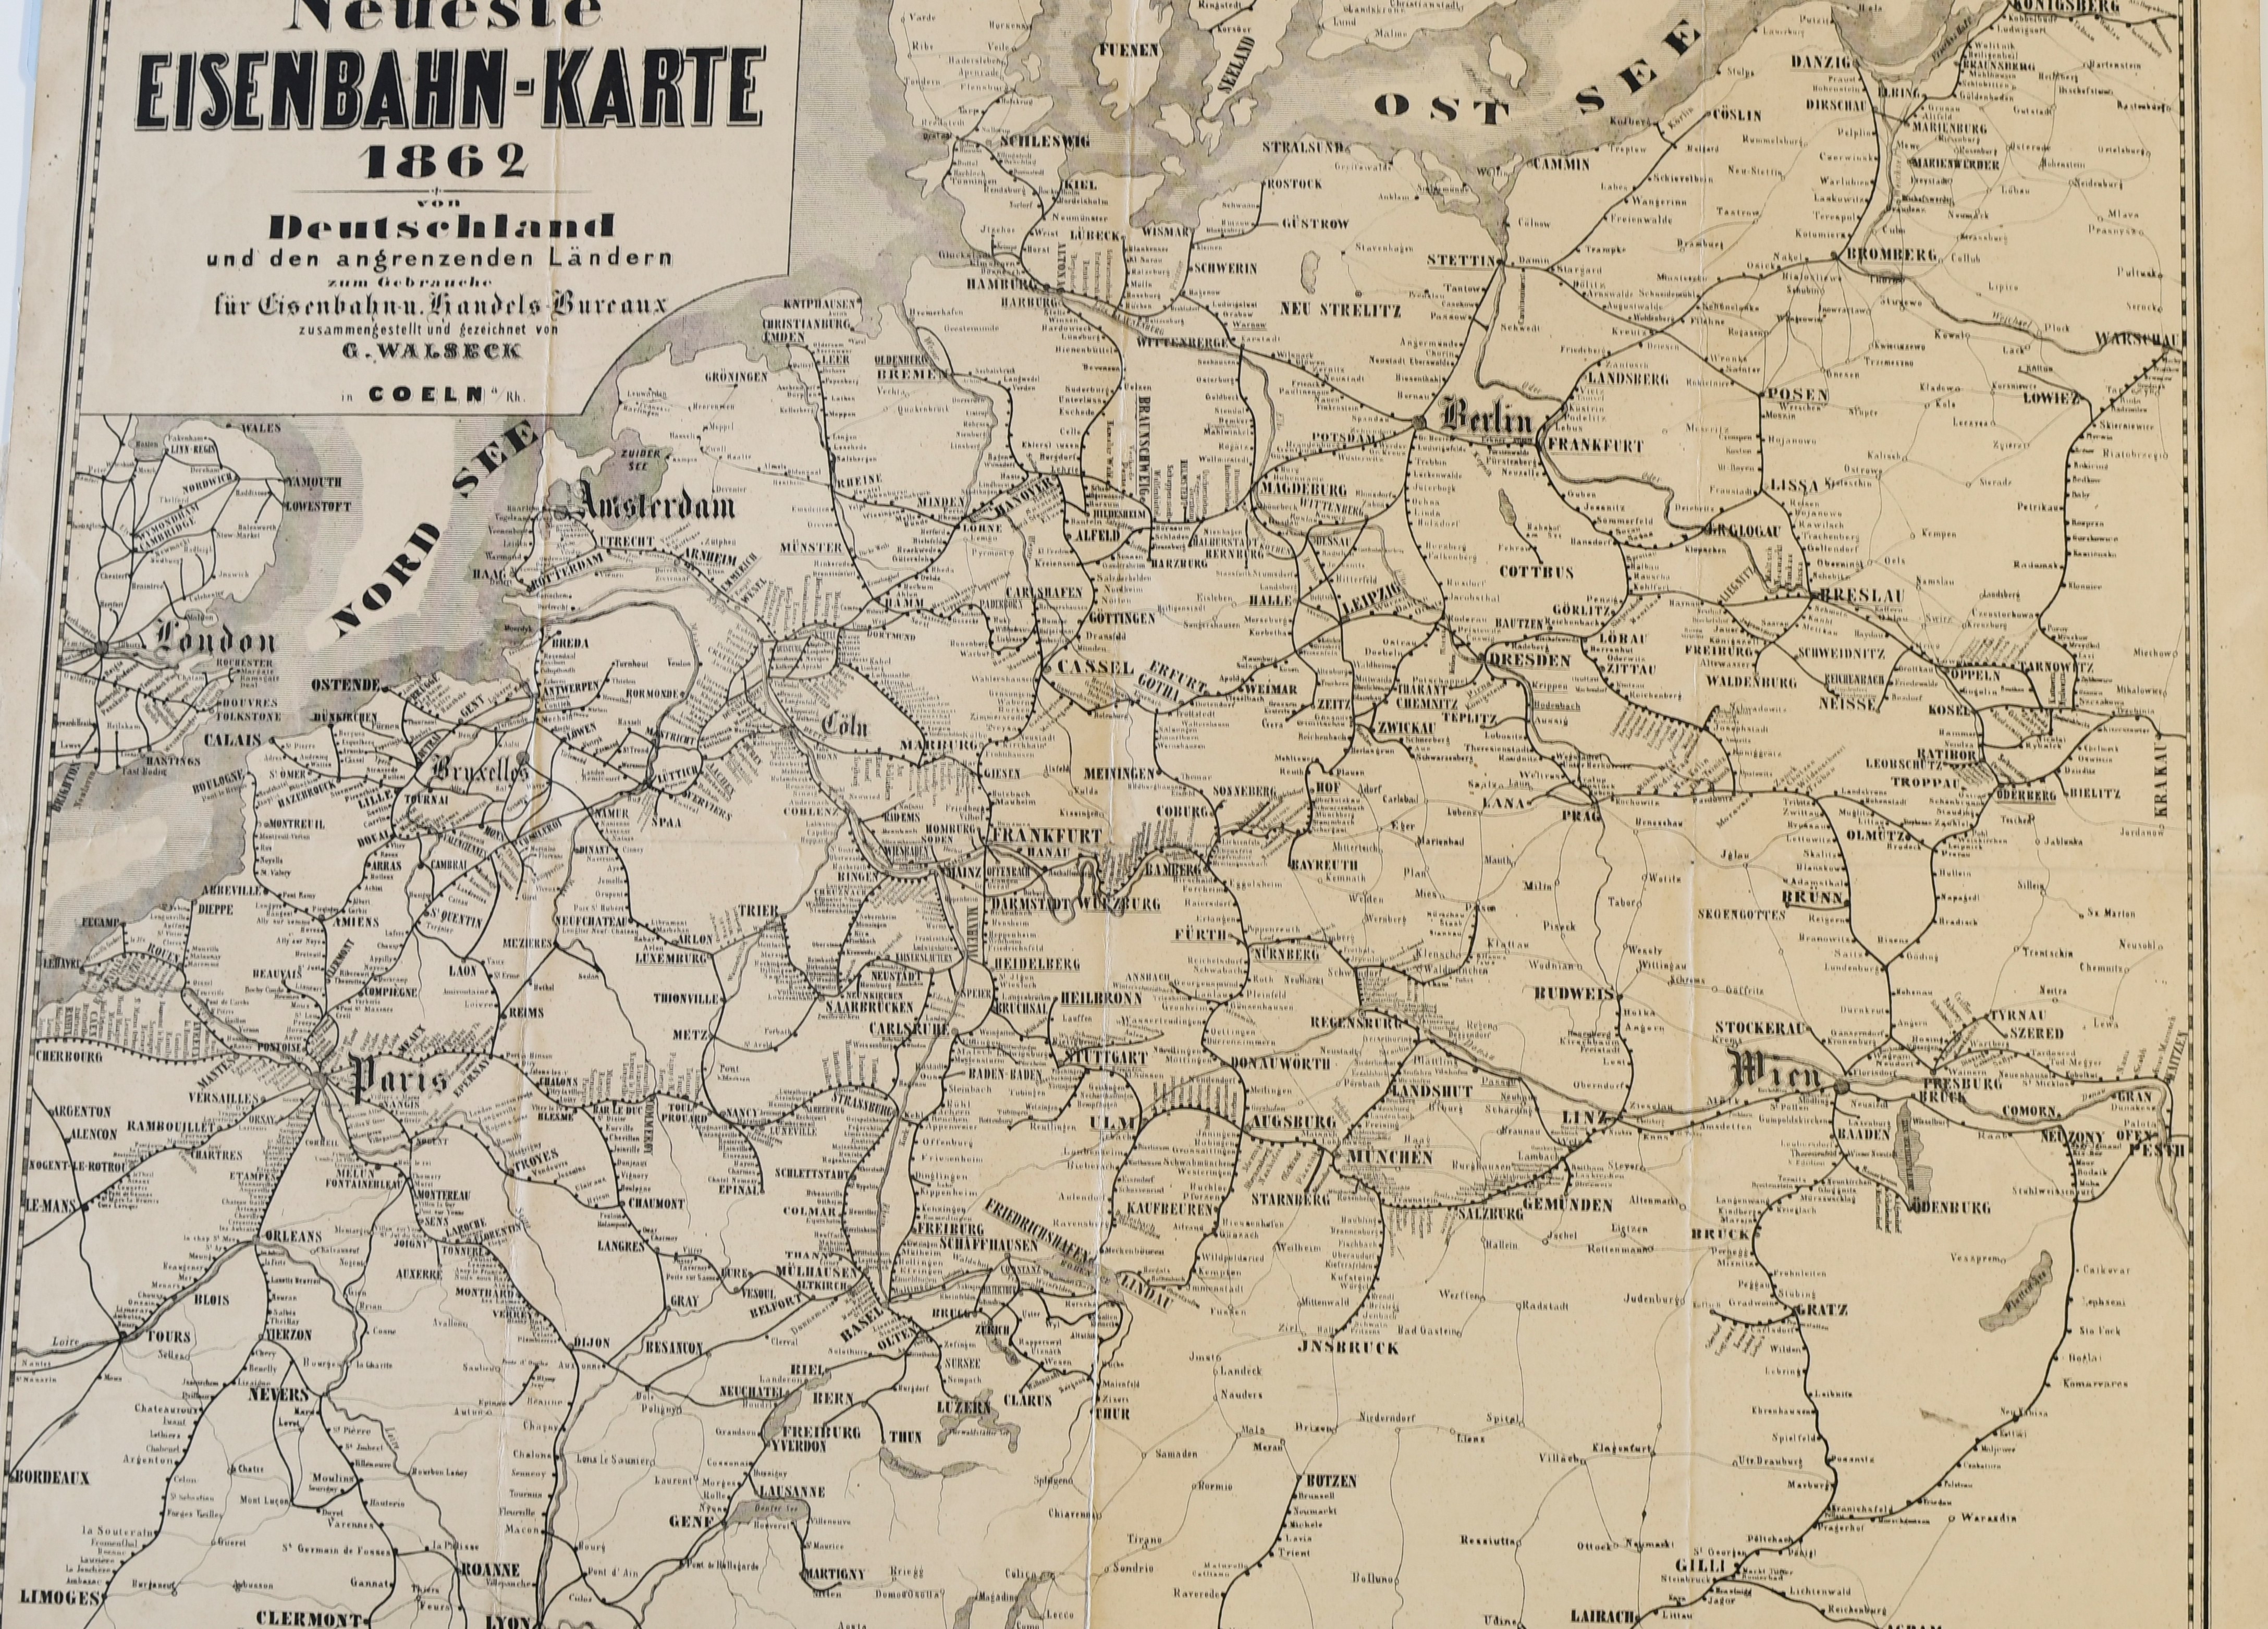 Neueste Eisenbahnkarte 1862 ((C) Sammlung Bergischer Geschichtsverein e.V. CC BY-NC)